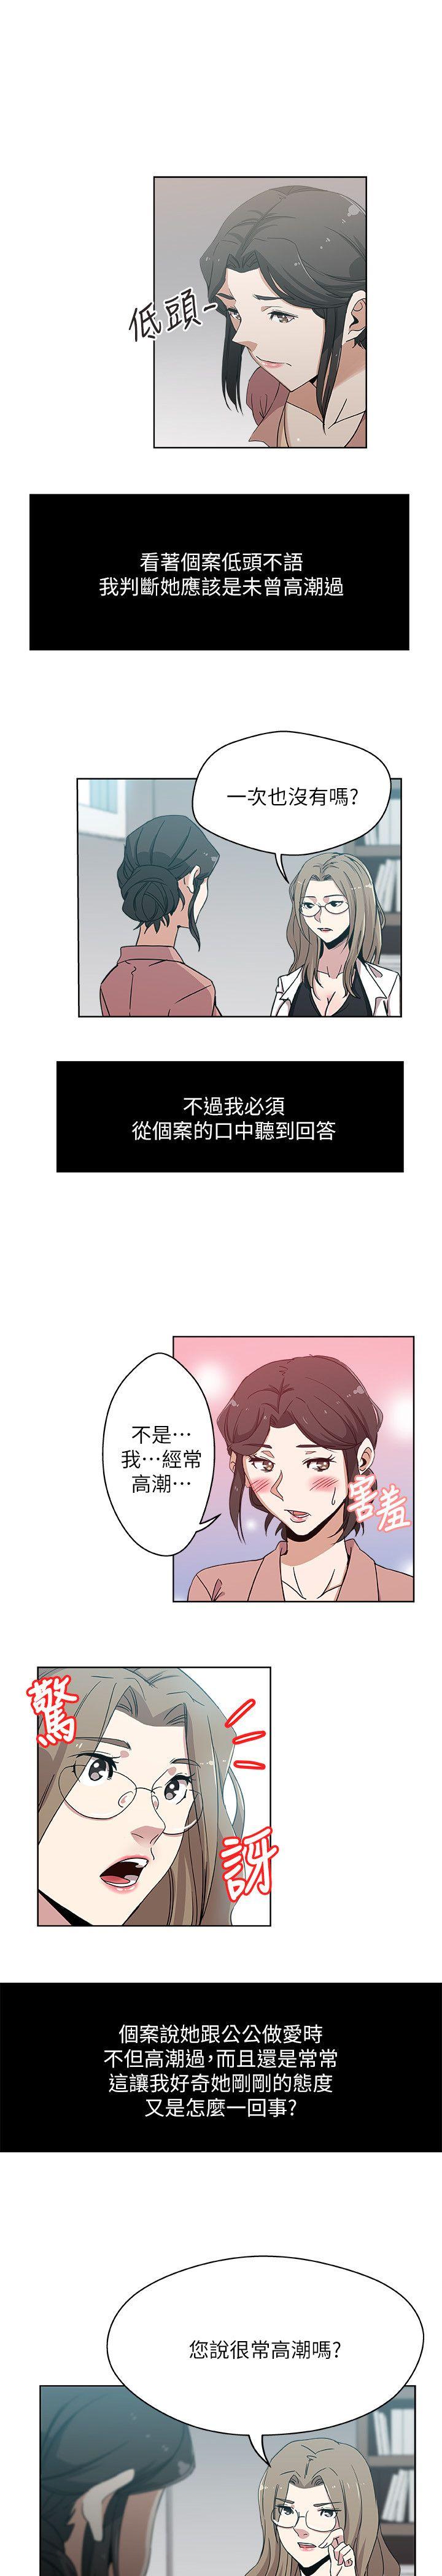 韩国污漫画 新媳婦 第10话-公公的「服务」 3